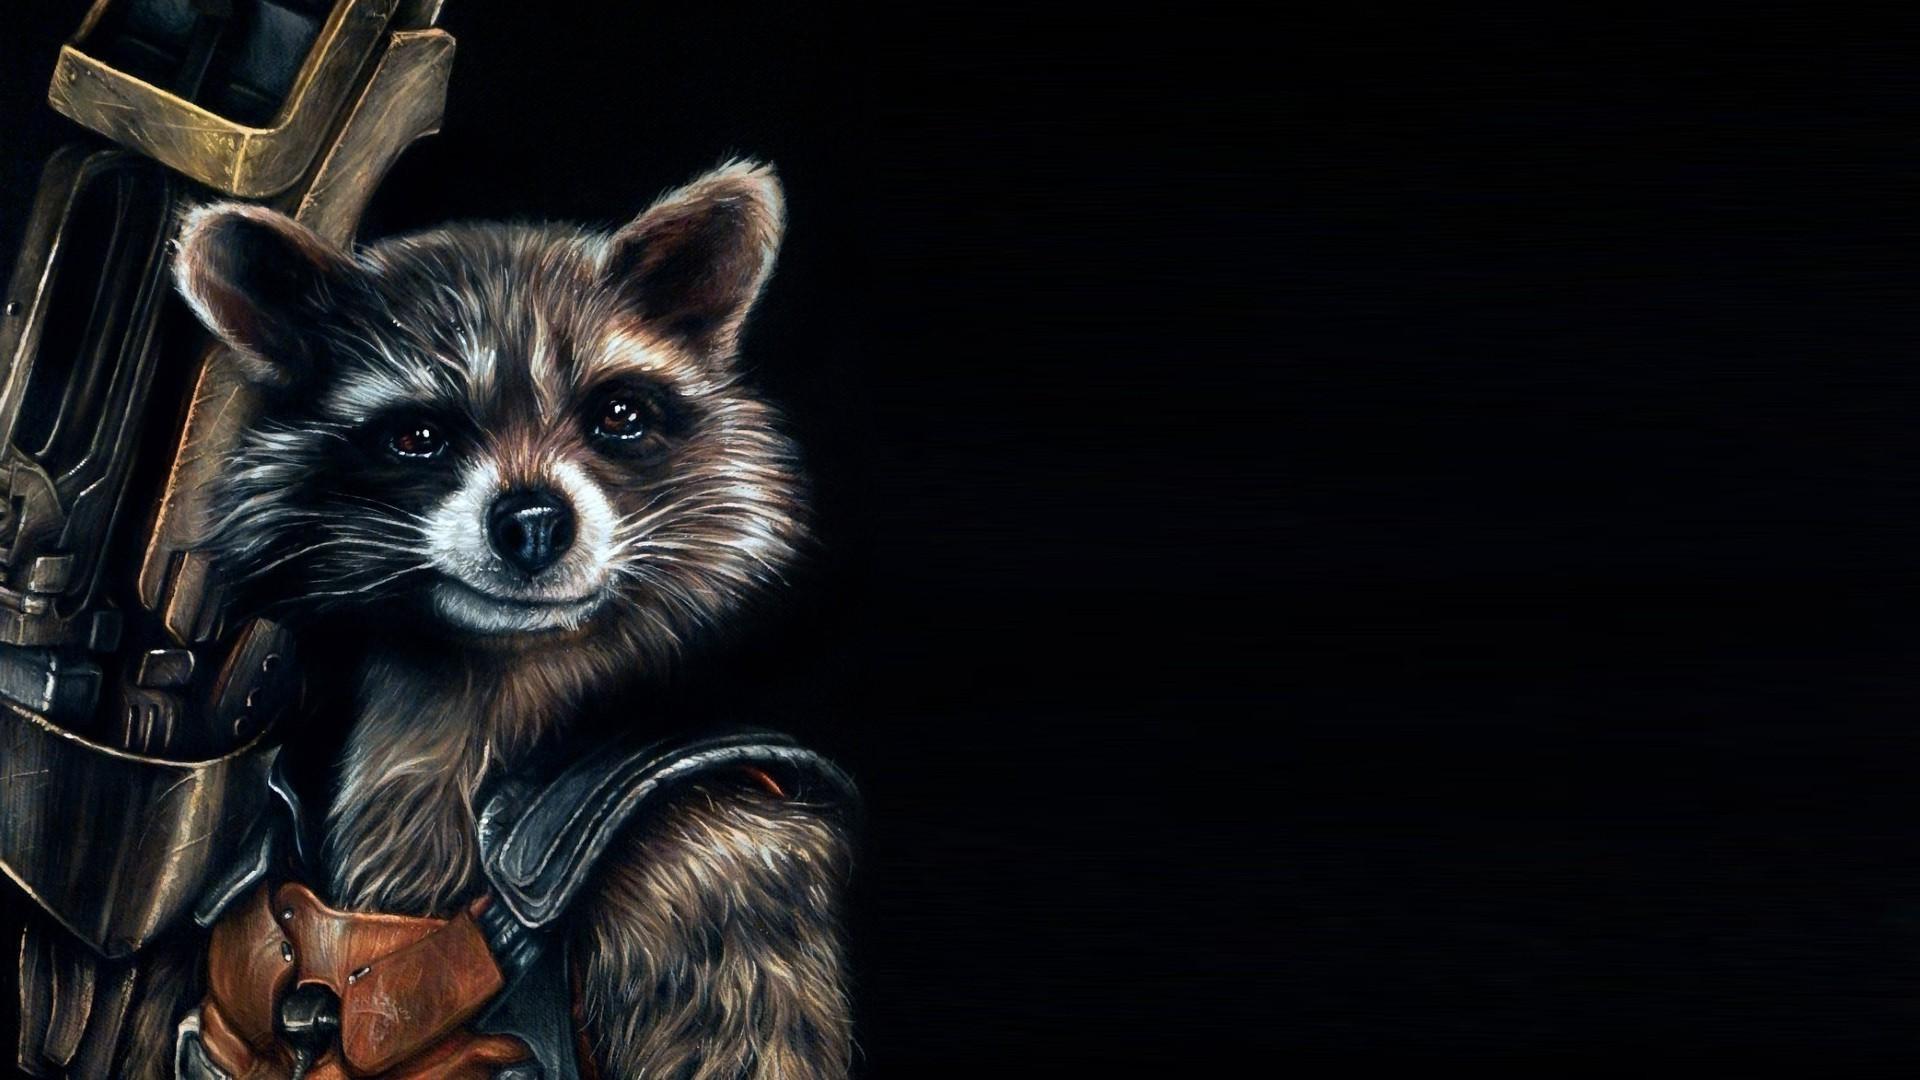 HD Rocket Raccoon Wallpaper